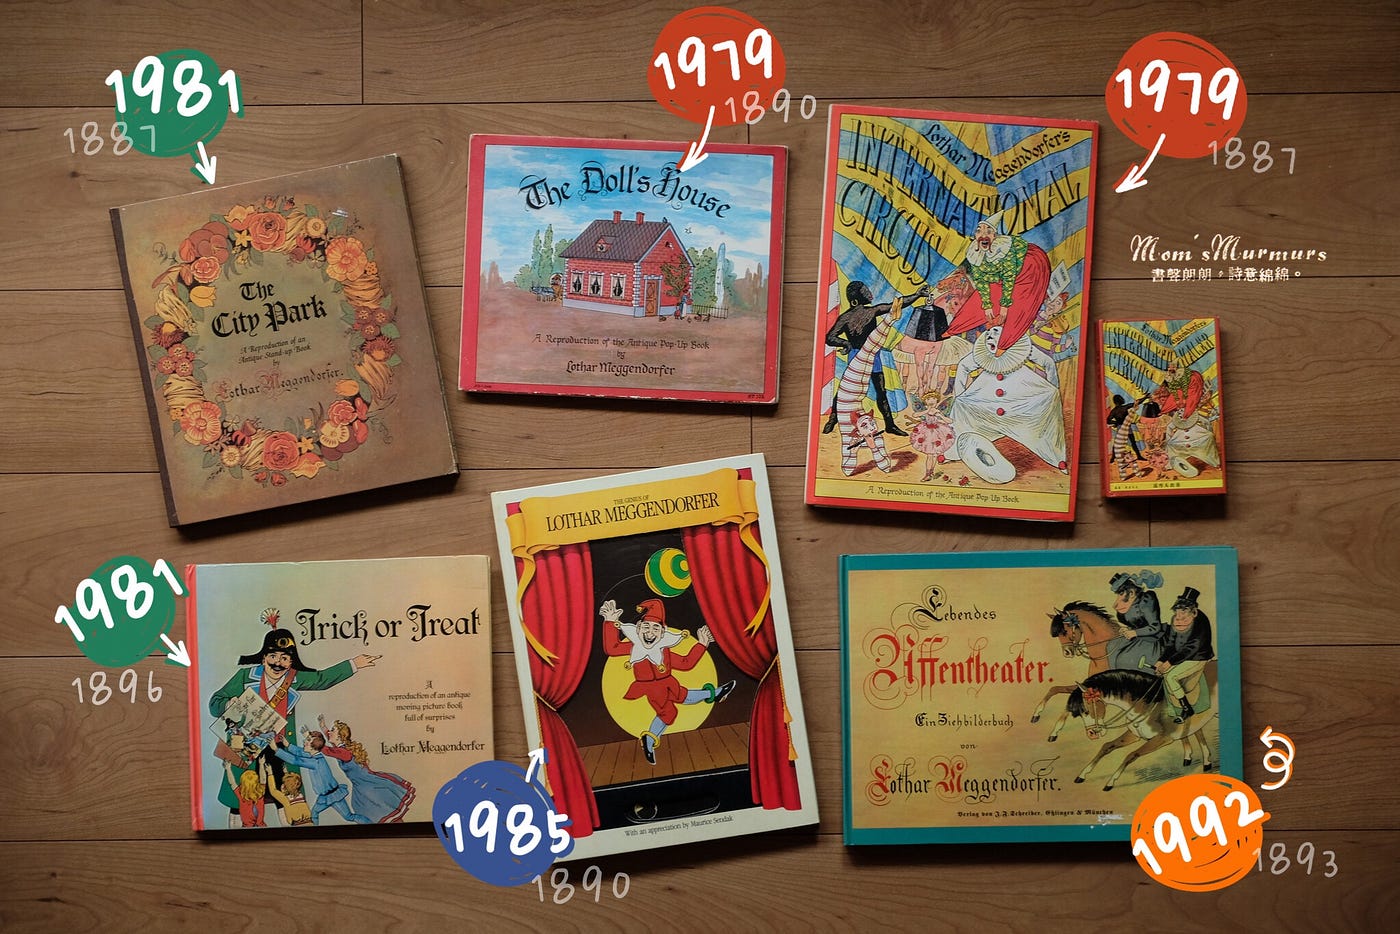 羅達 梅根多佛作品系列文立體操作書在很早期只運用在學術作品 為了讓成年讀者更理解概念 到了18世紀後期才開始應用在童書上 儘管在19世紀中期就有廣為人知的立體書作品 德國作家